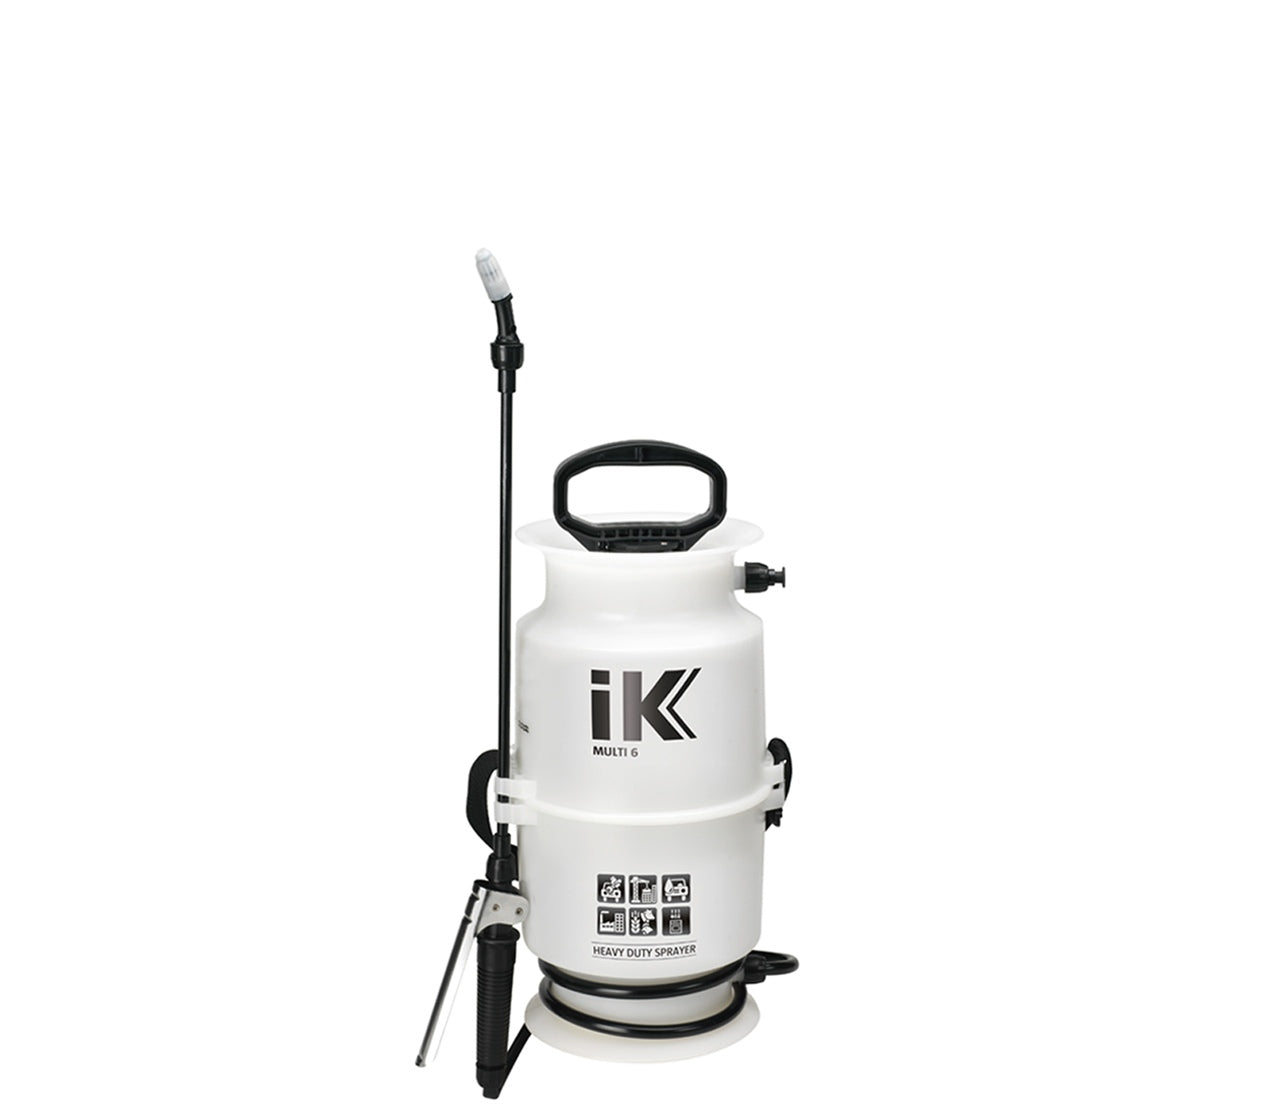 IK Multi 6 Foam Sprayer – 4L